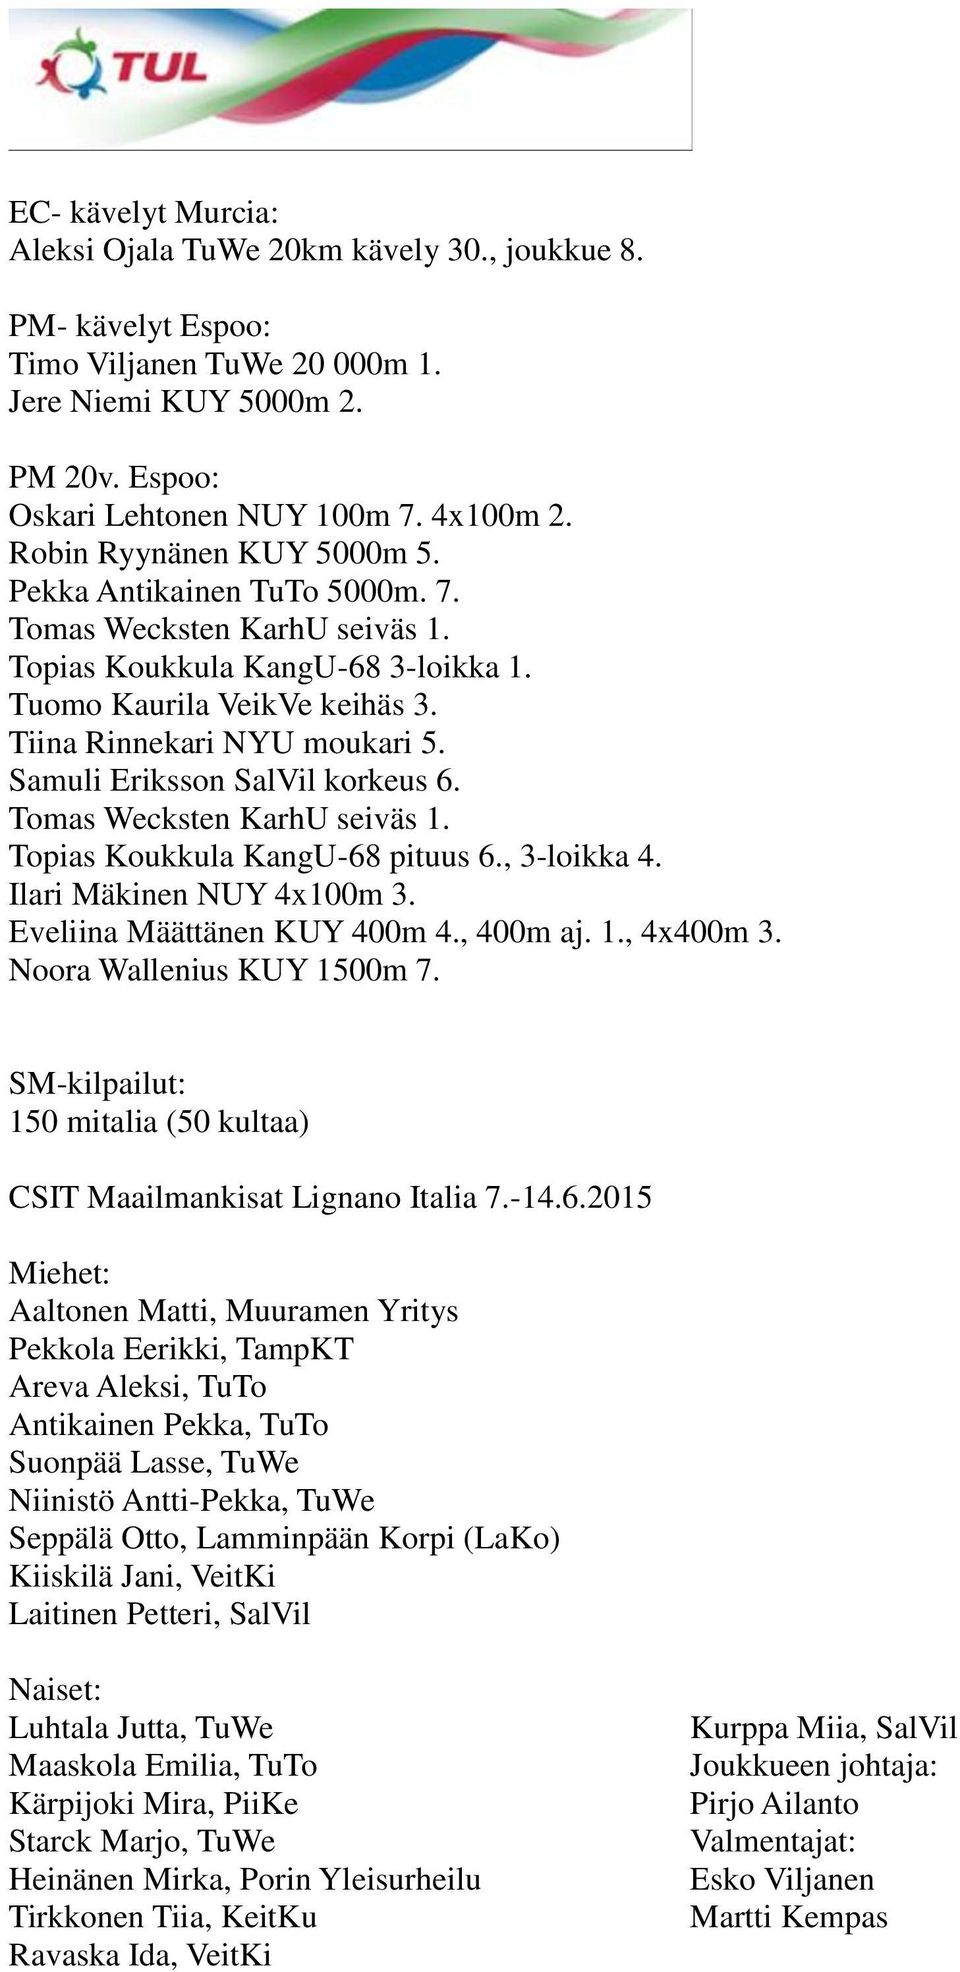 Samuli Eriksson SalVil korkeus 6. Tomas Wecksten KarhU seiväs 1. Topias Koukkula KangU-68 pituus 6., 3-loikka 4. Ilari Mäkinen NUY 4x100m 3. Eveliina Määttänen KUY 400m 4., 400m aj. 1., 4x400m 3.